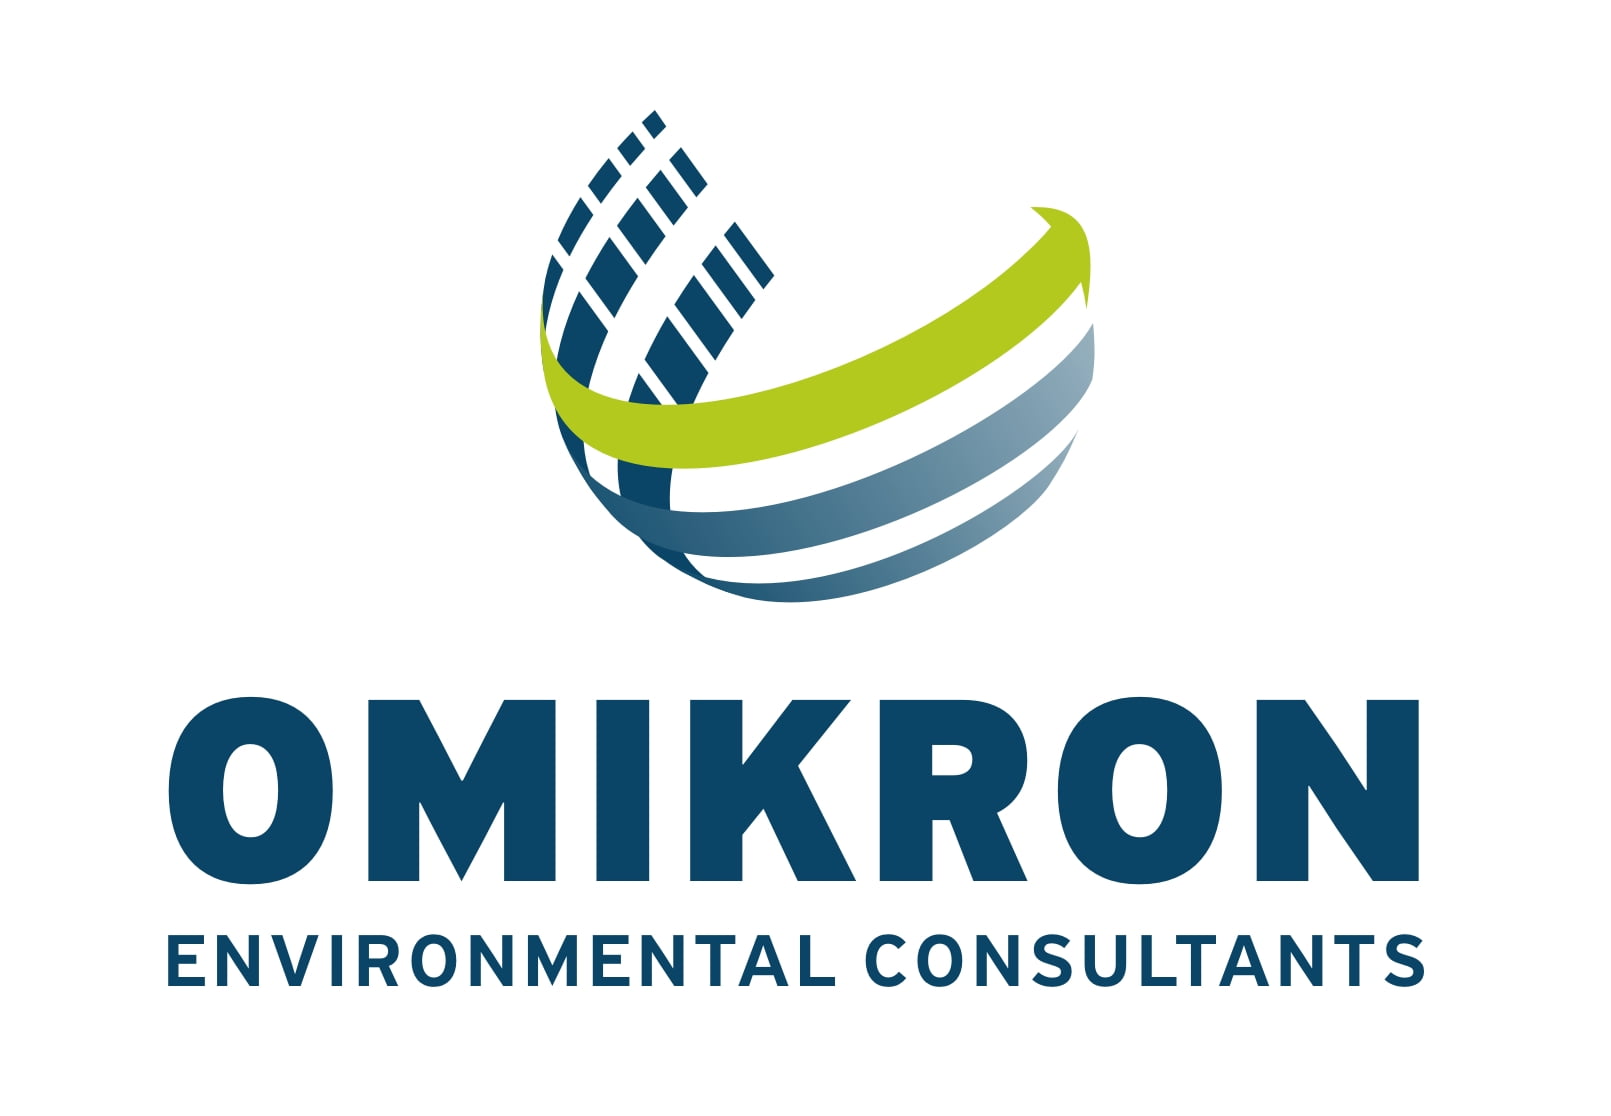 OMIKRON SA - Environmental Consultants